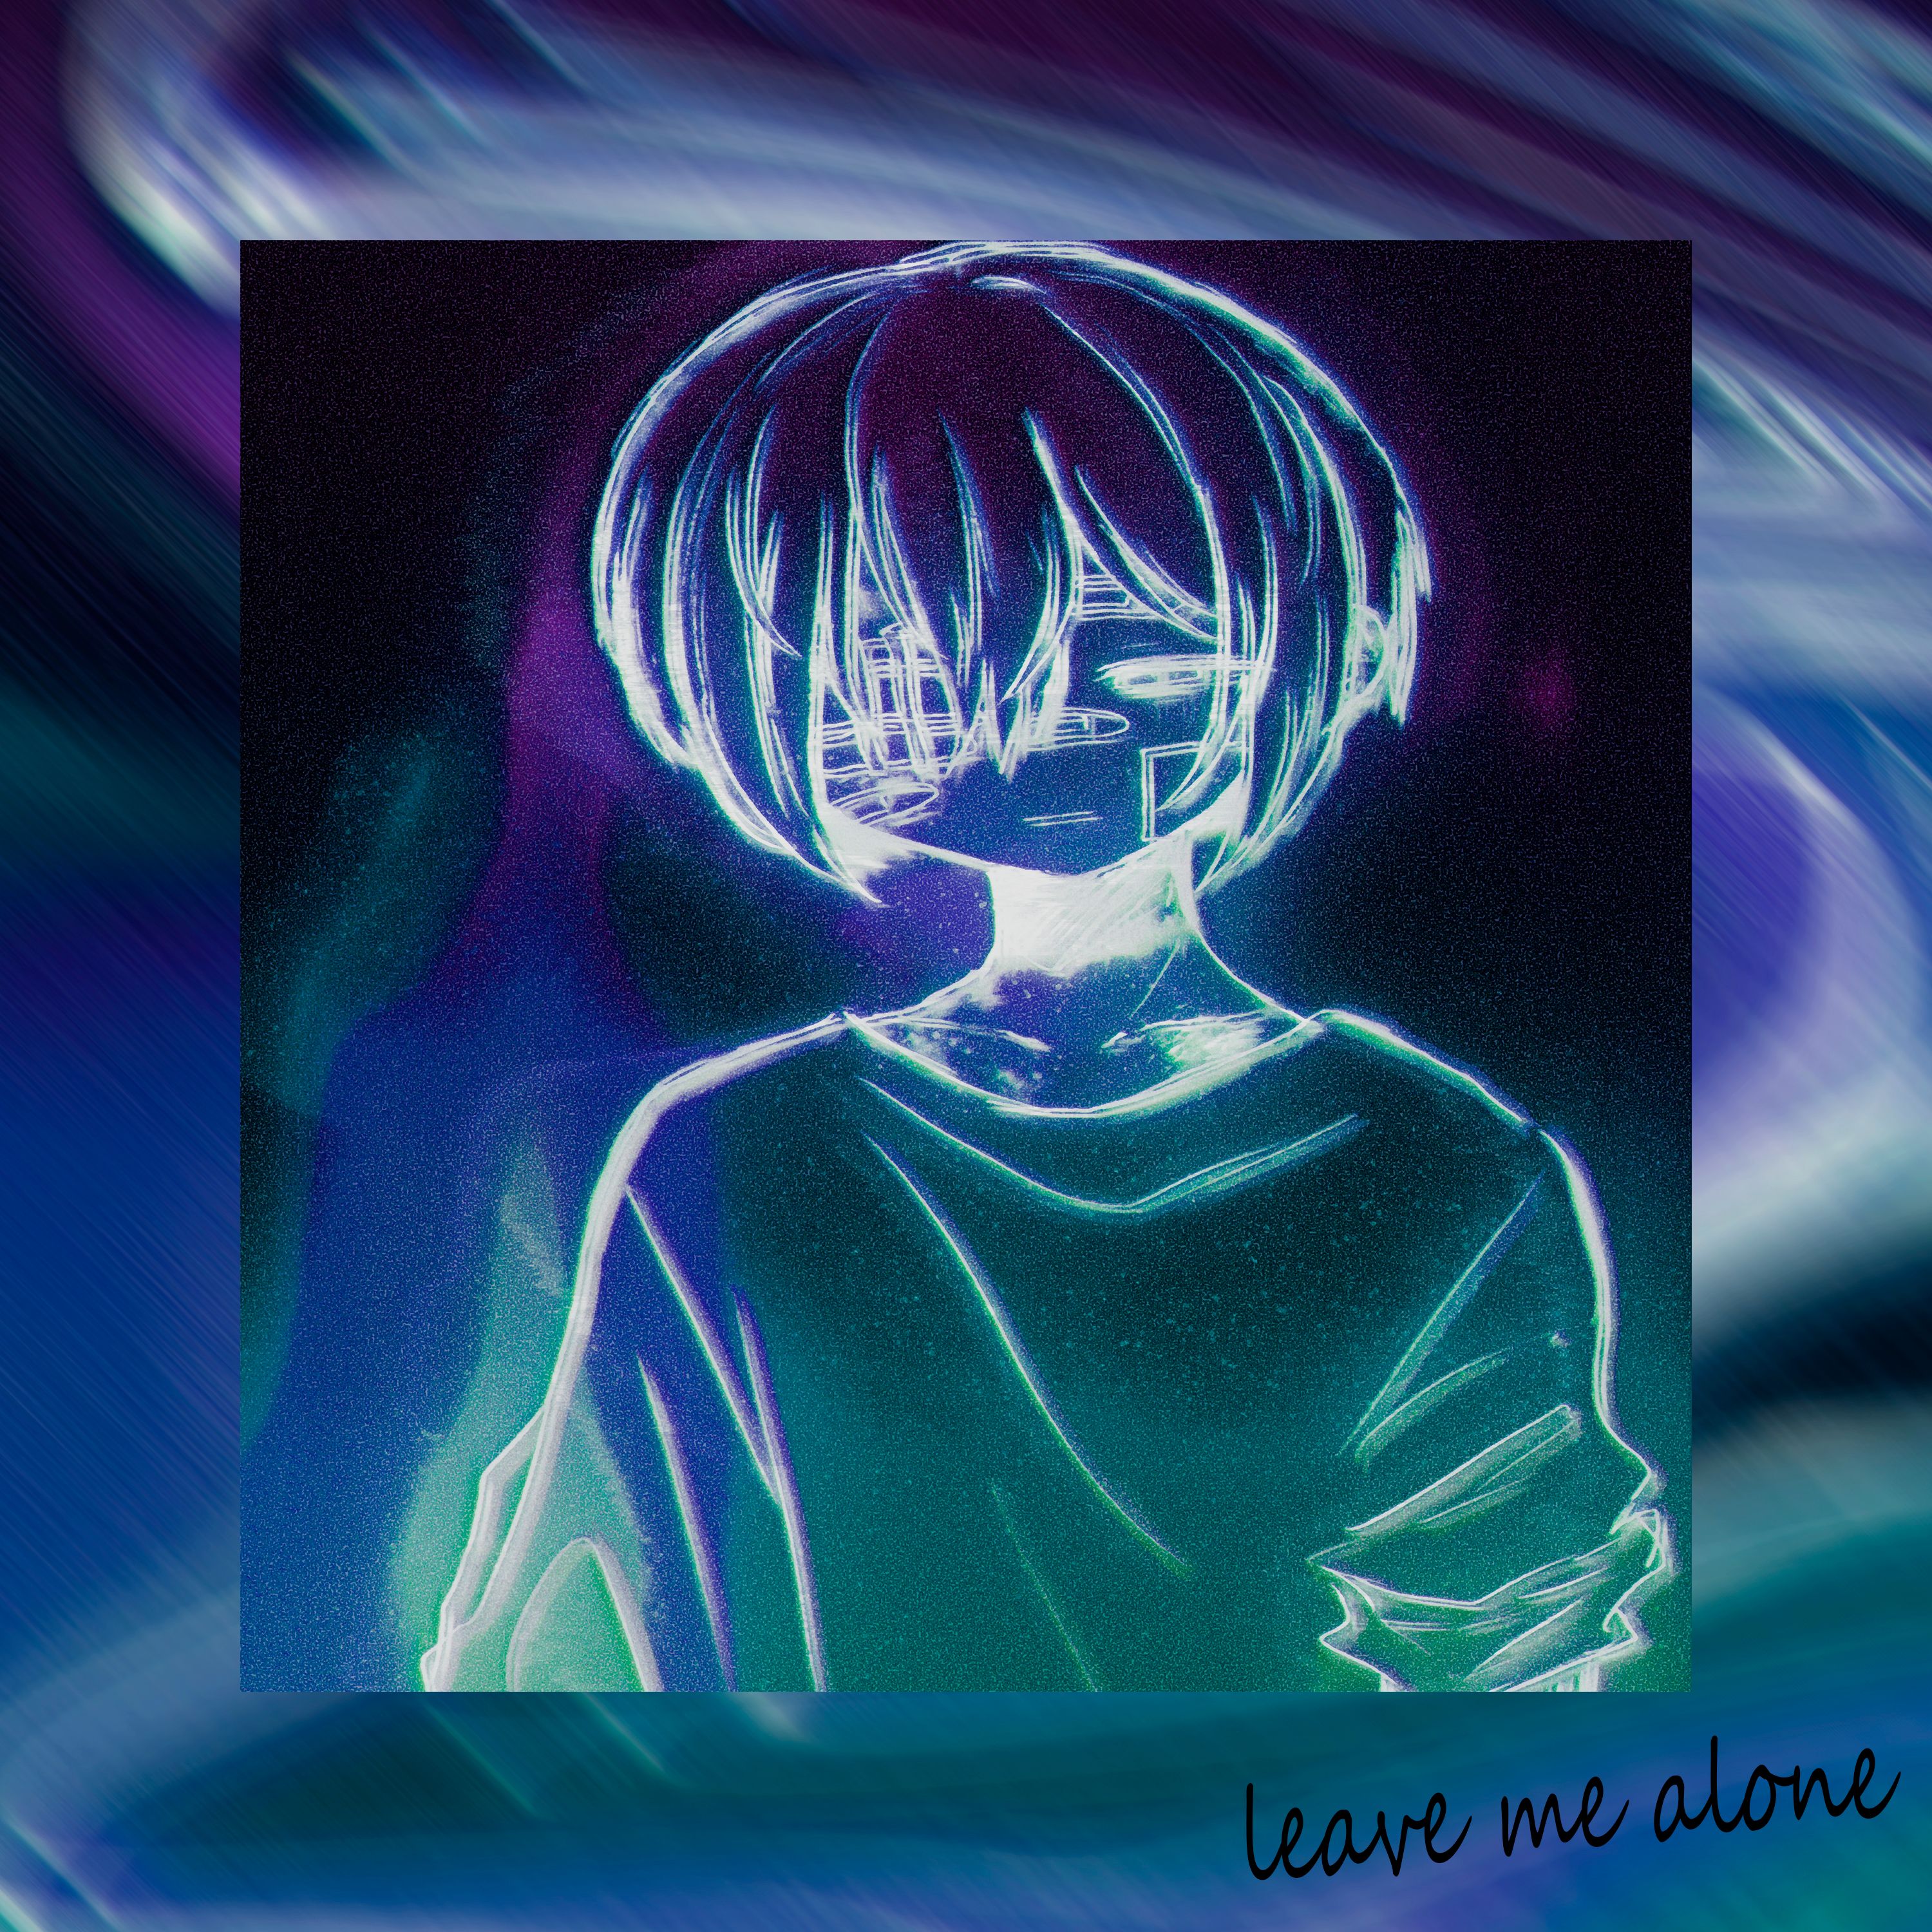 Stiahnuť ▼ Leave Me Alone